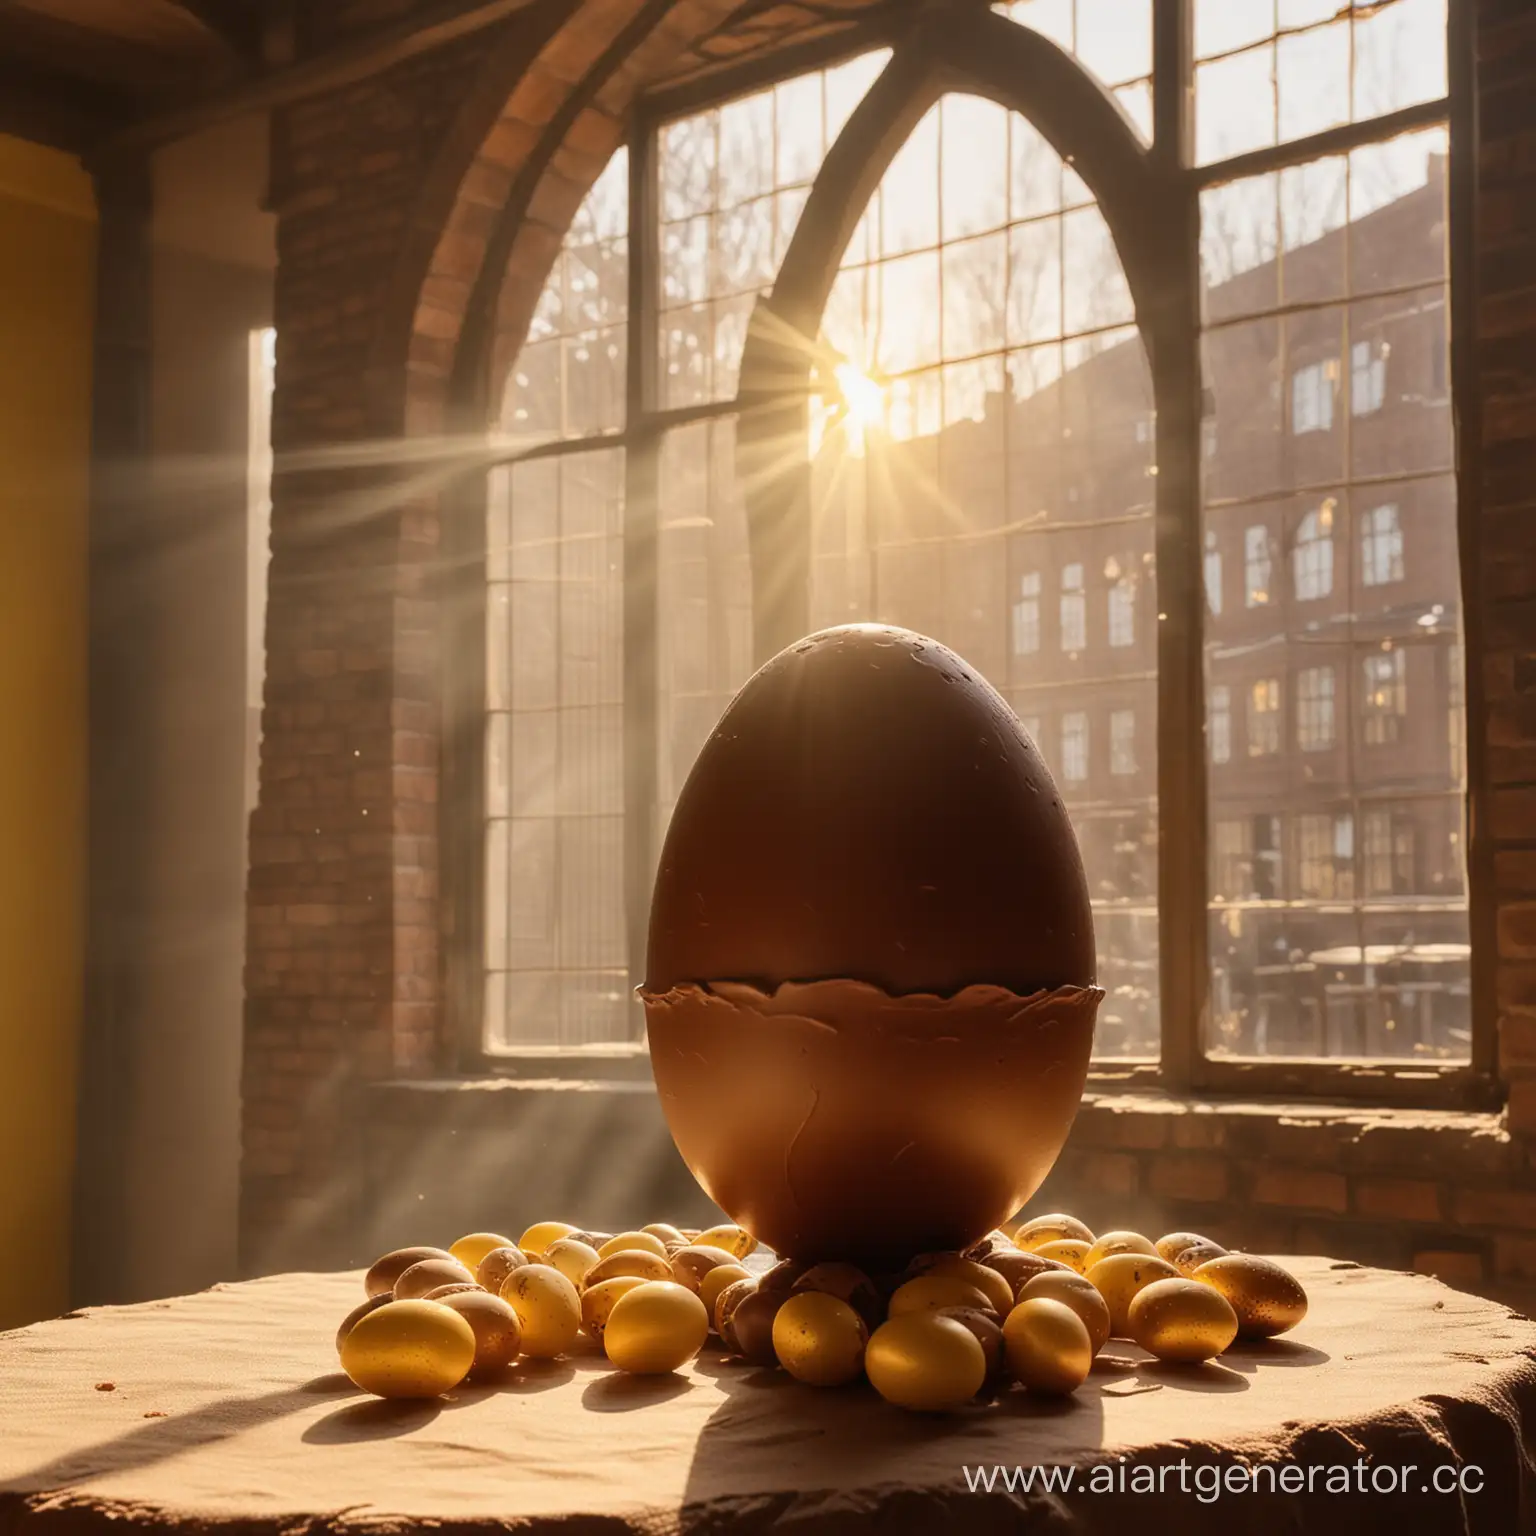 Шоколадное пасхальное яйцо большое и рядом несколько маленьких шоколадных яиц на фоне древней шоколадной фабрики с мягким желтым солнечным светом из окон